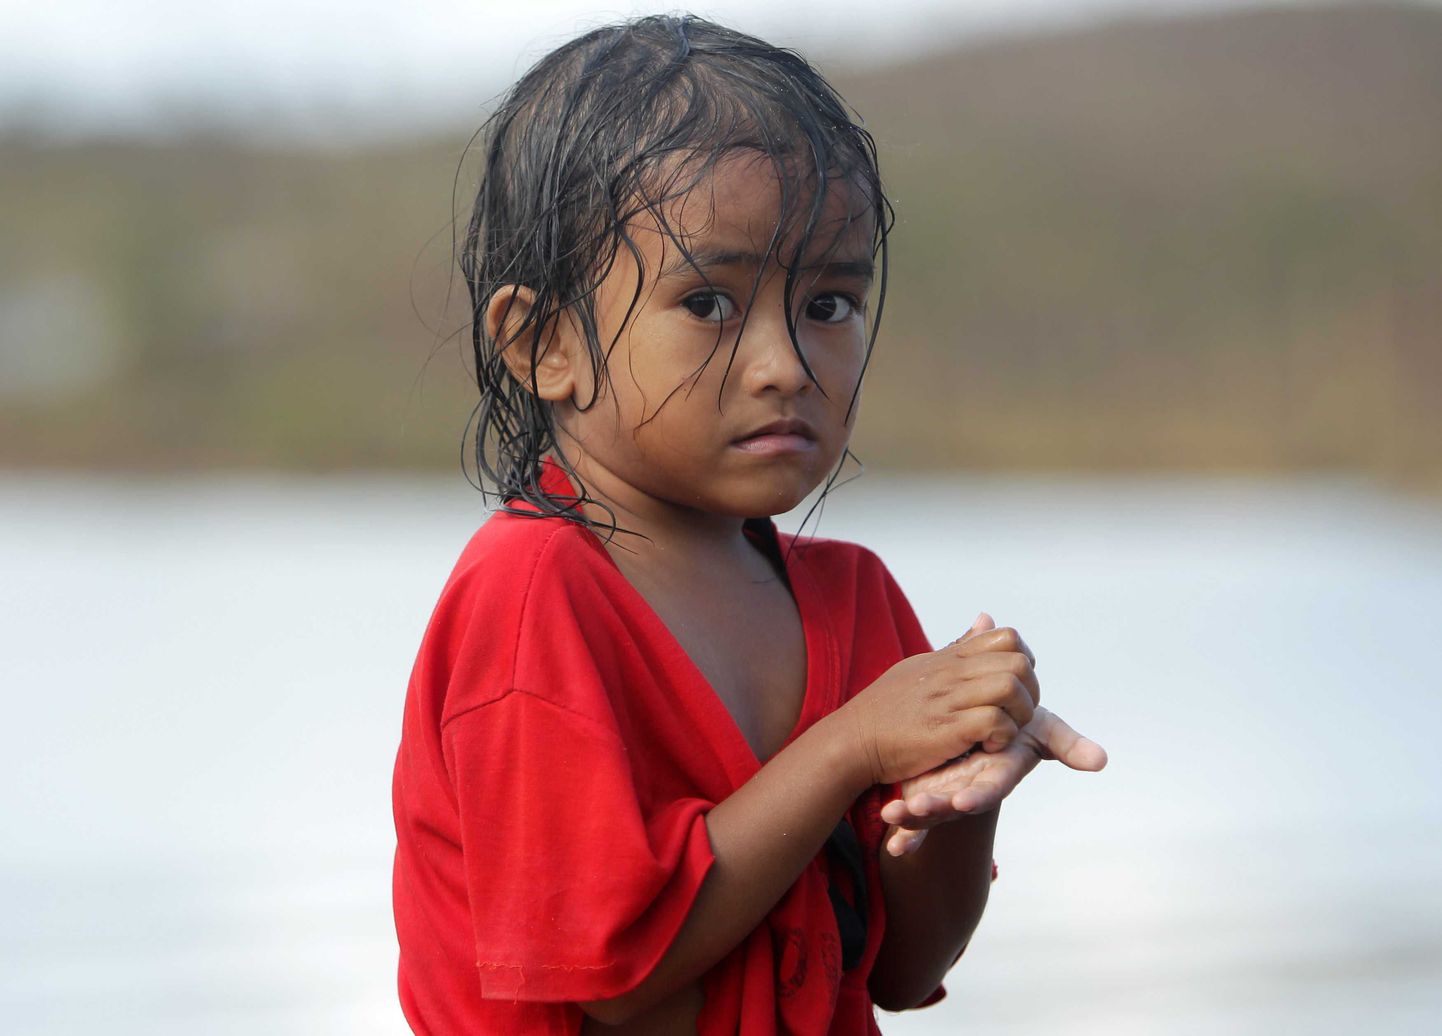 Taifuunile jalgu jäänud Marabuti linna laps.